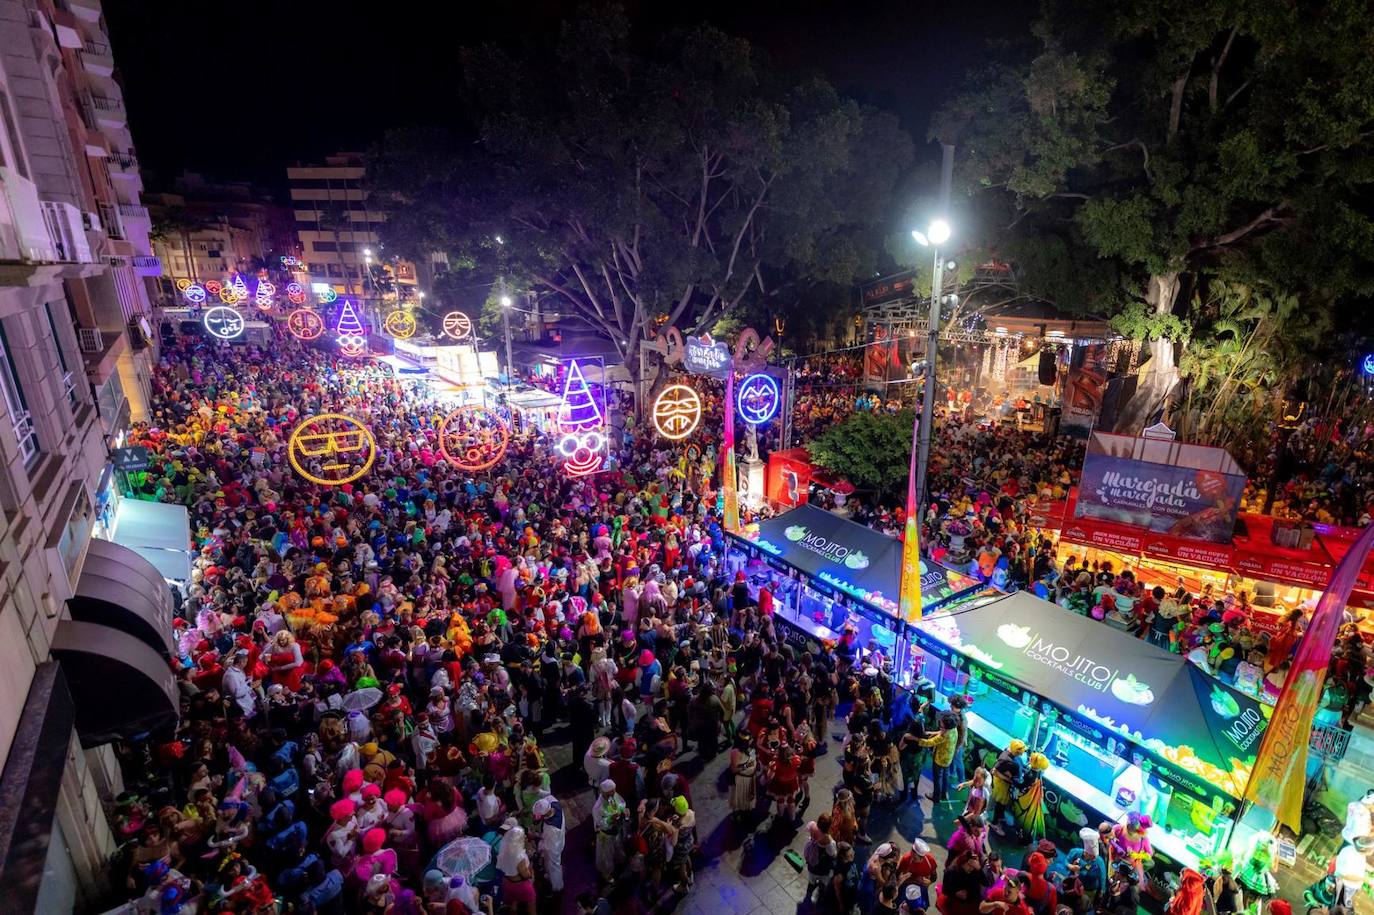 El lunes de Carnaval se salda en Tenerife con 179 asistencias, la mayoría por alcoholemia